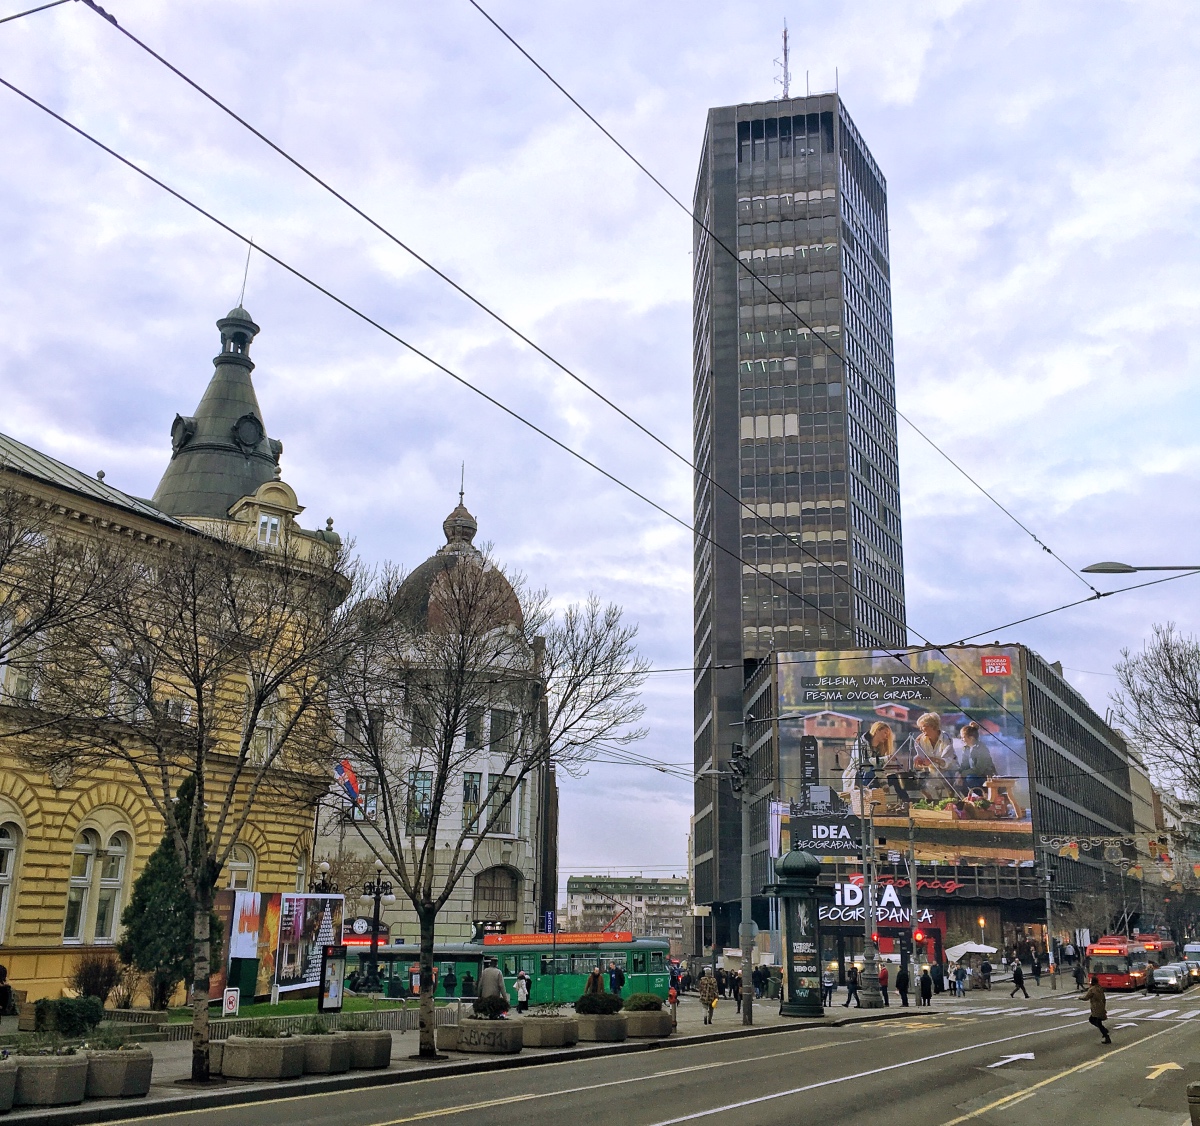 Belgrade Palace skyscraper / Beogradjanka